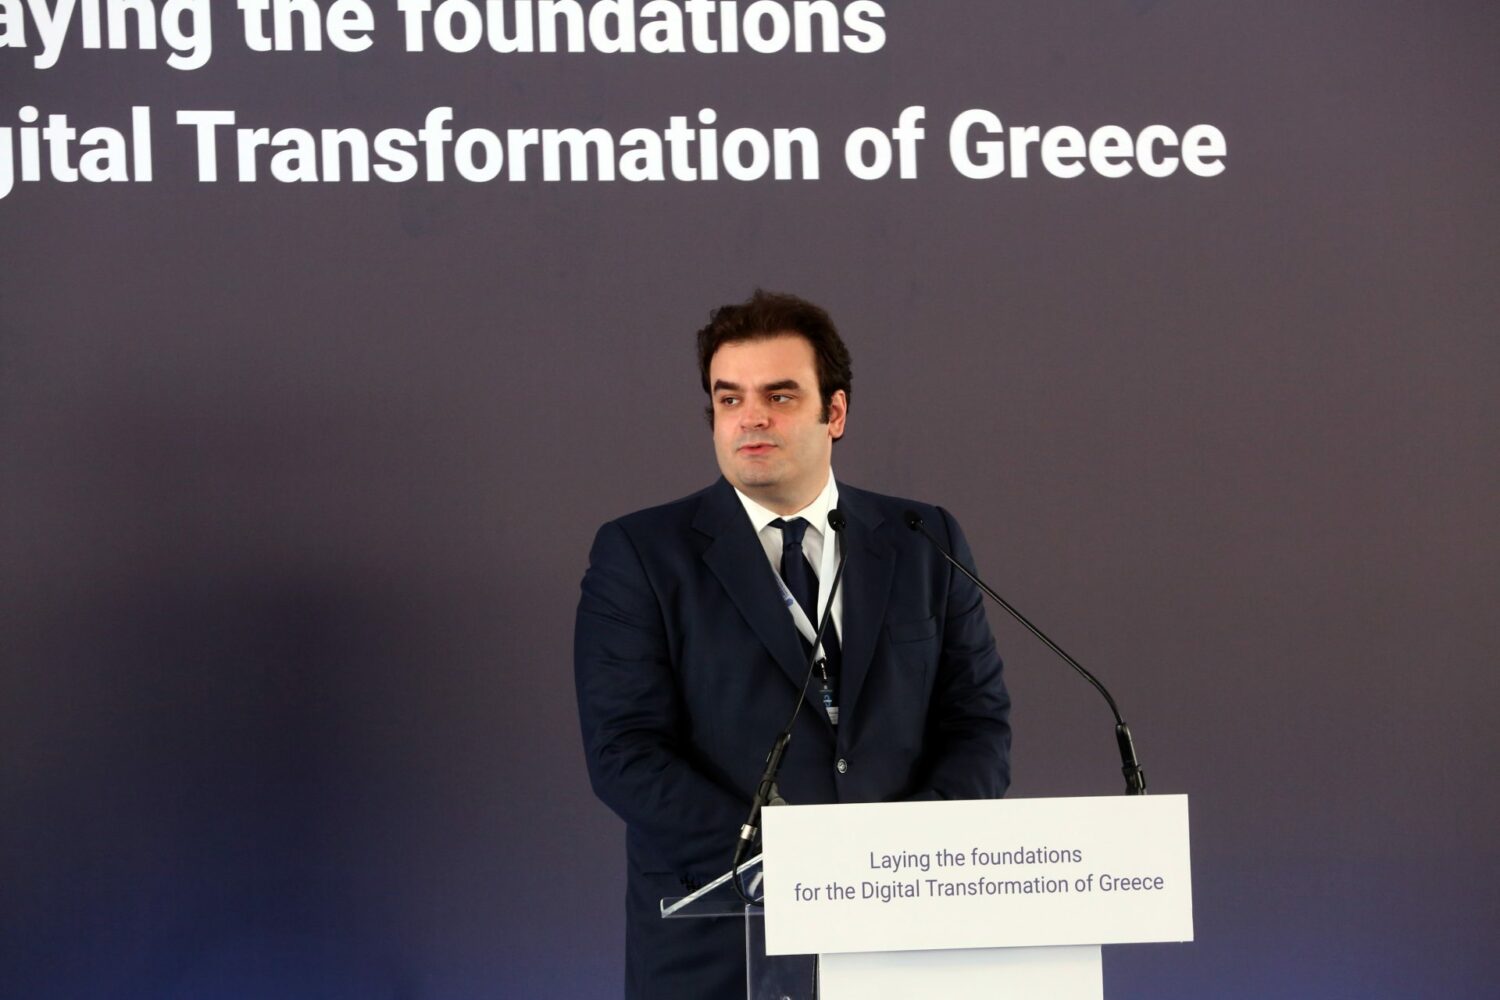 Πιερρακάκης: Η ψηφιακή πολιτική βοηθά τα άτομα με αναπηρία, τον απόδημο Έλληνα αλλά και τη διαφάνεια τον απόδημο Έλληνα αλλά και τη διαφάνεια